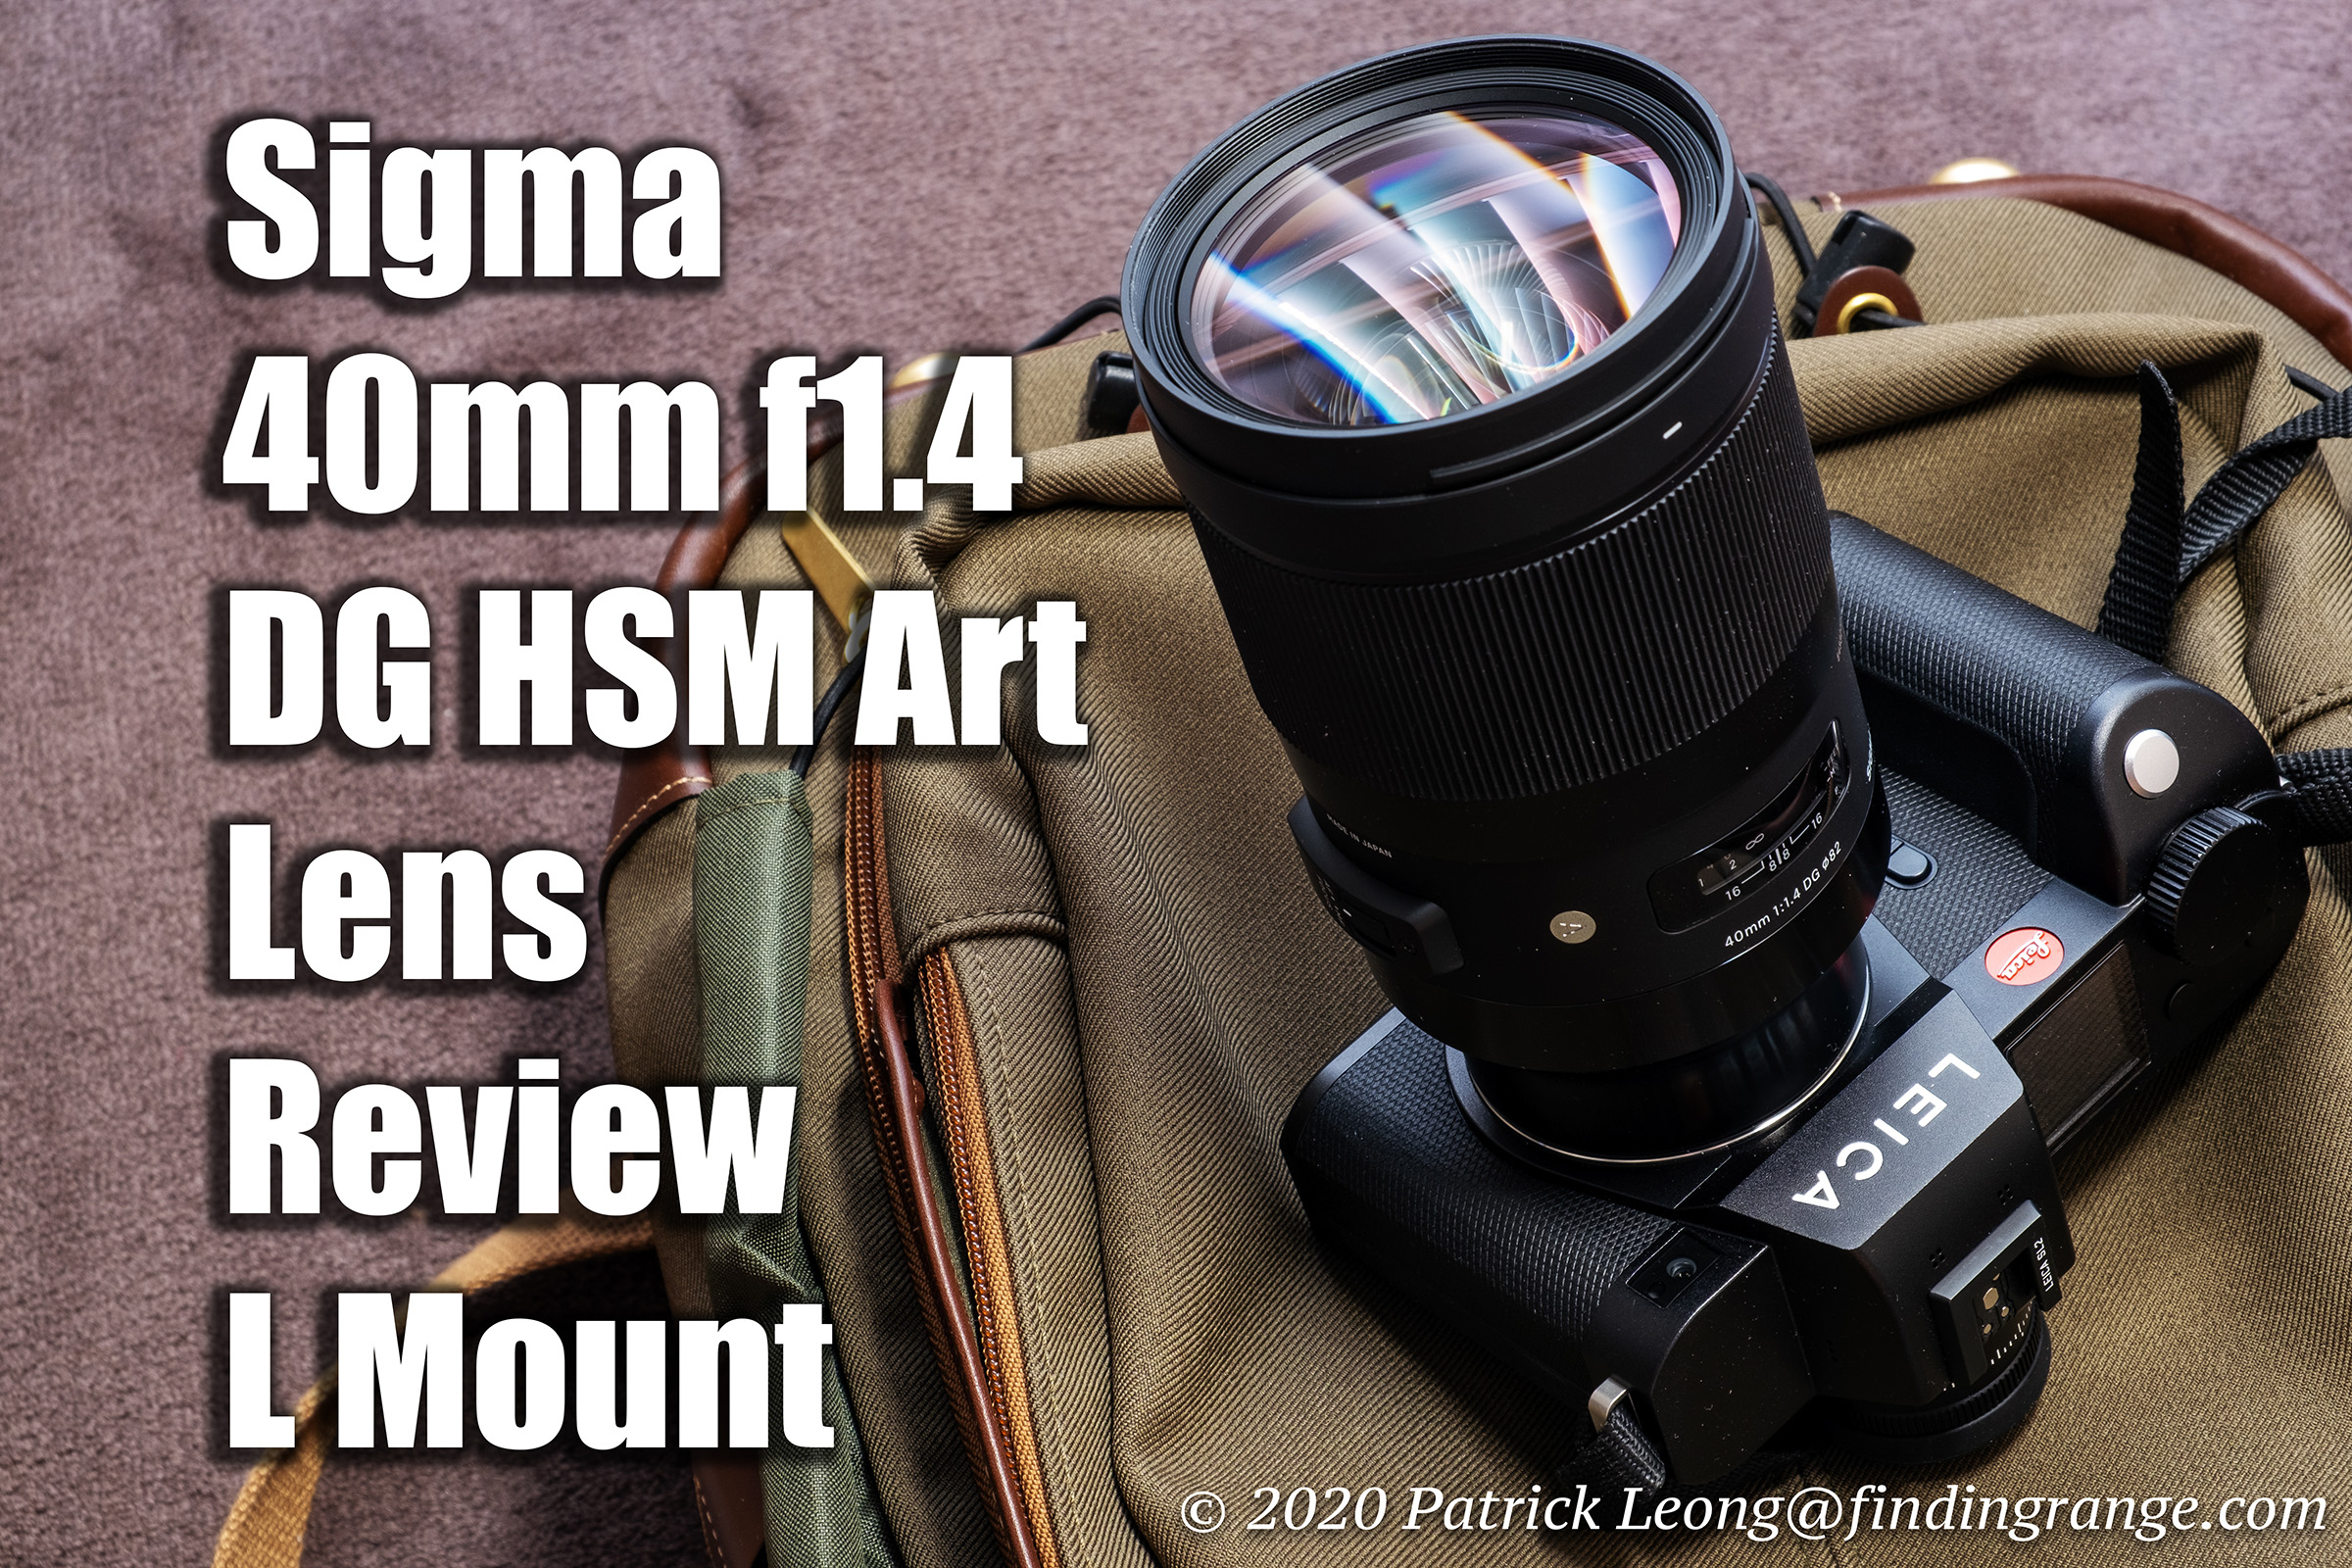 Sigma 40mm f1.4 DG HSM Art Lens Review L Mount